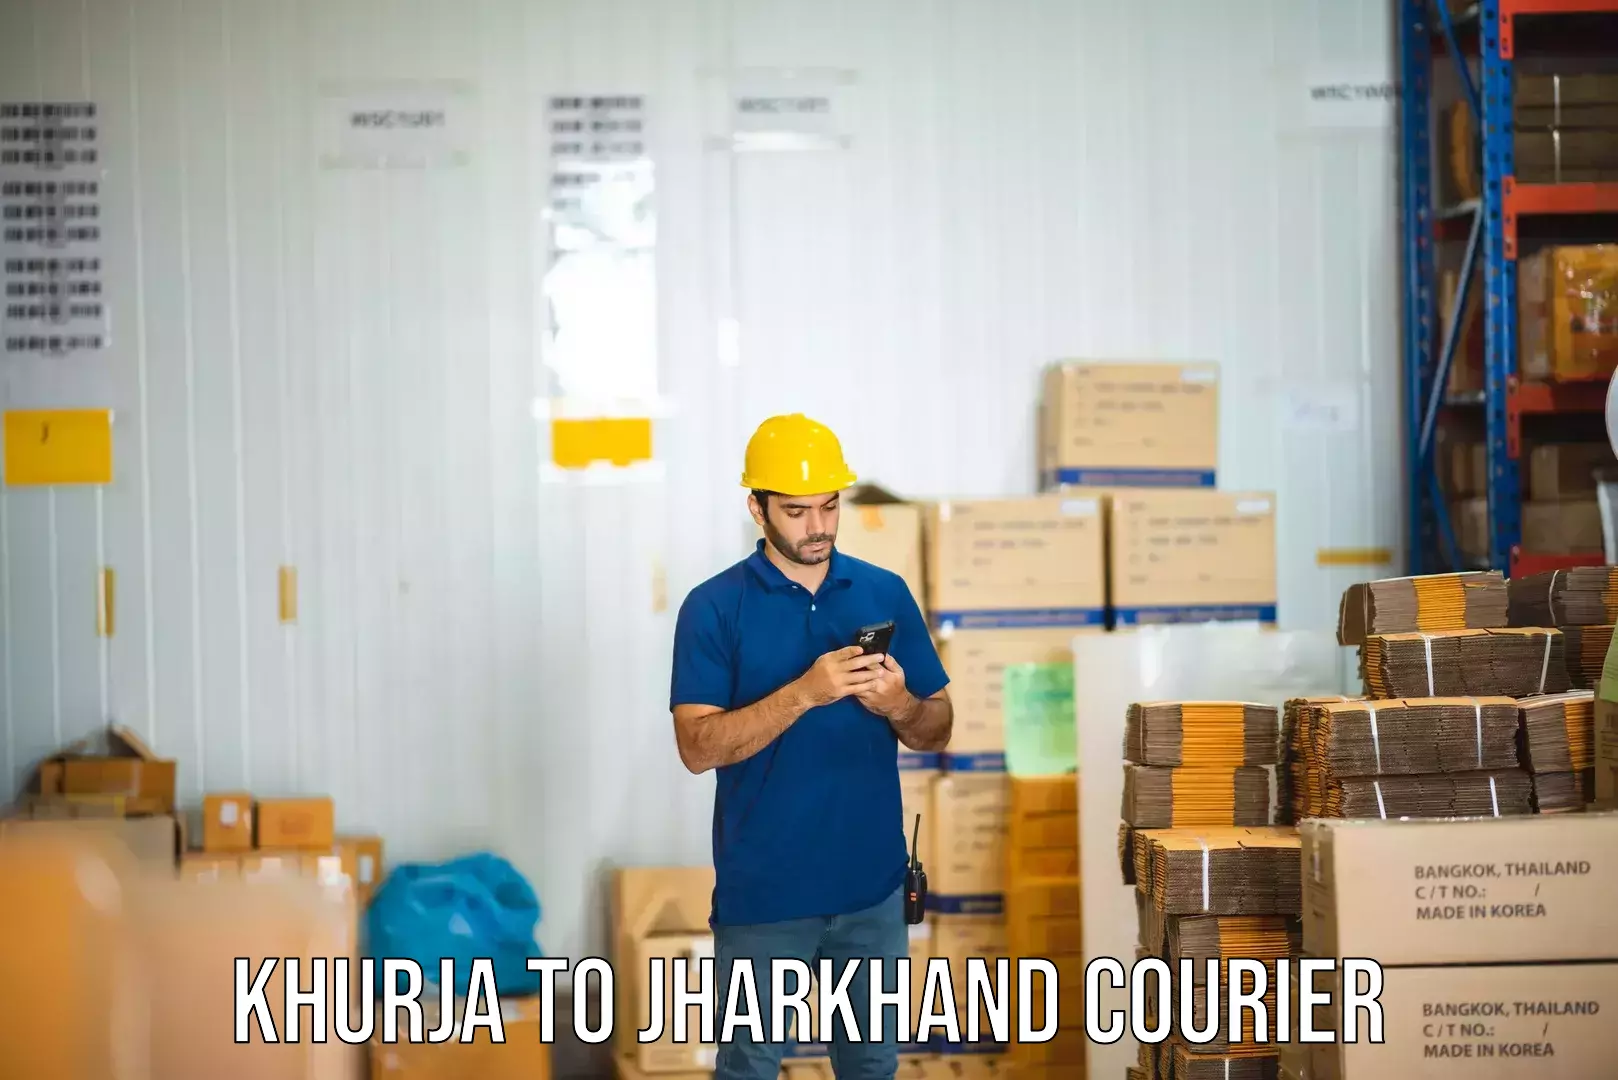 Global courier networks Khurja to Lohardaga